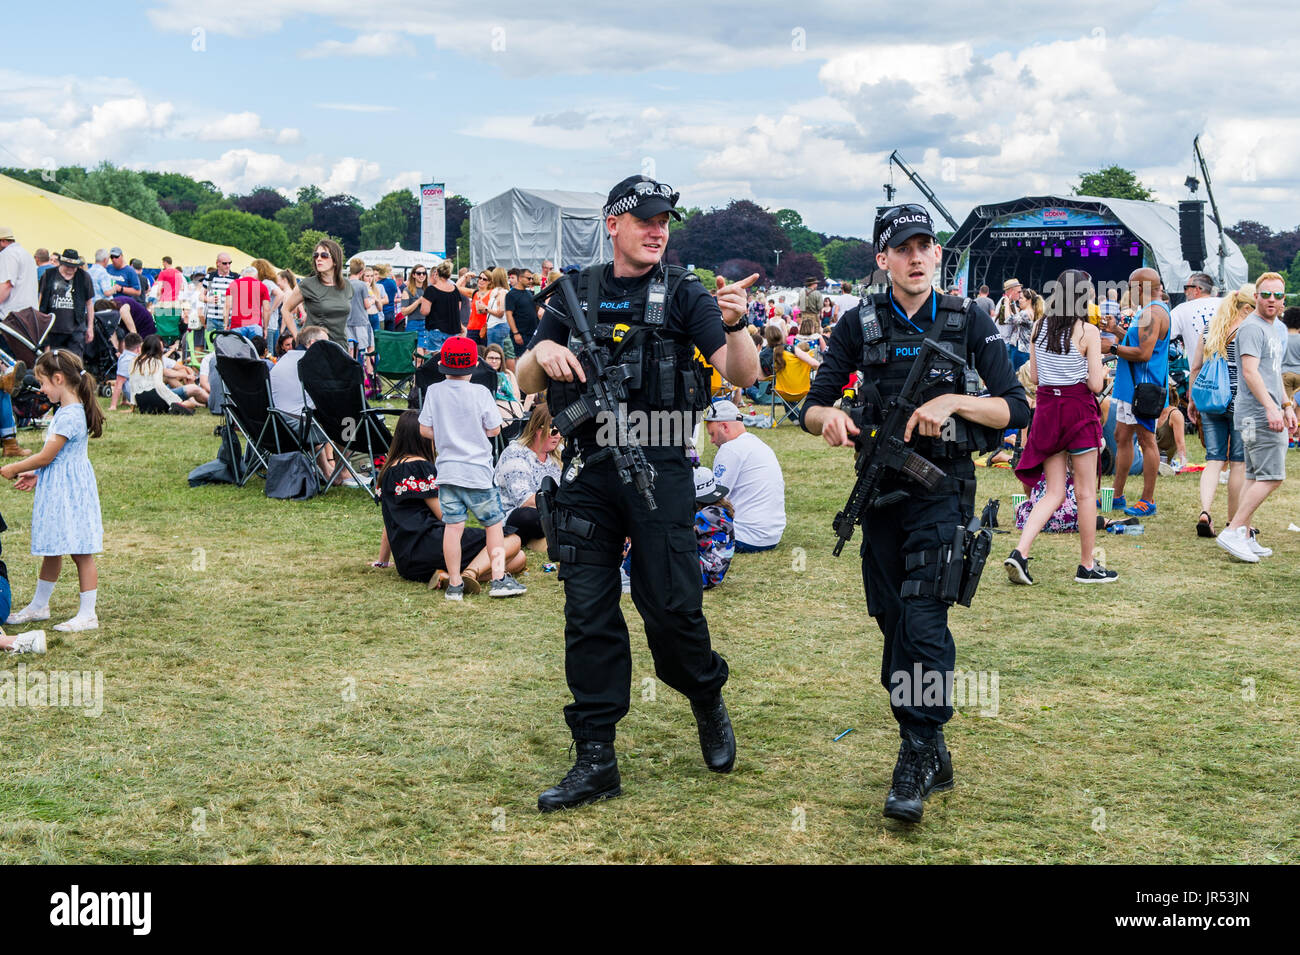 Armati di pattuglia di polizia Coventry Godiva Festival di musica, di Coventry Regno Unito in risposta all'ondata di recenti attacchi terroristici nel Regno Unito, Gran Bretagna. Foto Stock